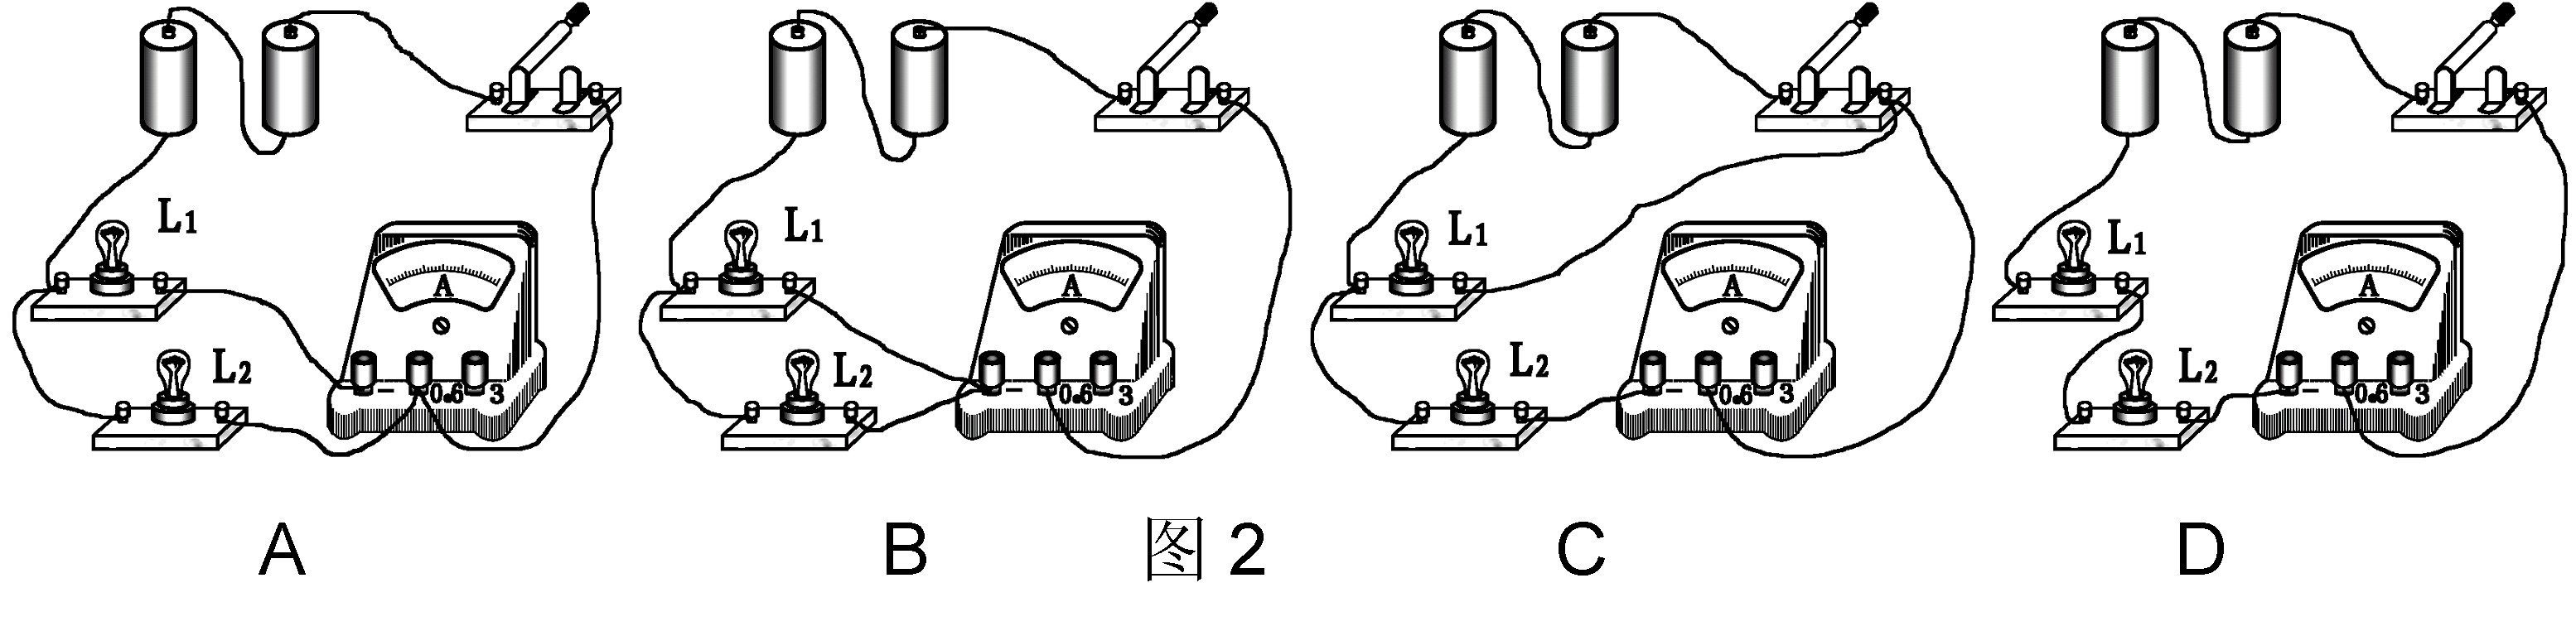 如图所示的实物连接电路中满足灯l1与l2并联电流表测量灯l1支路电流